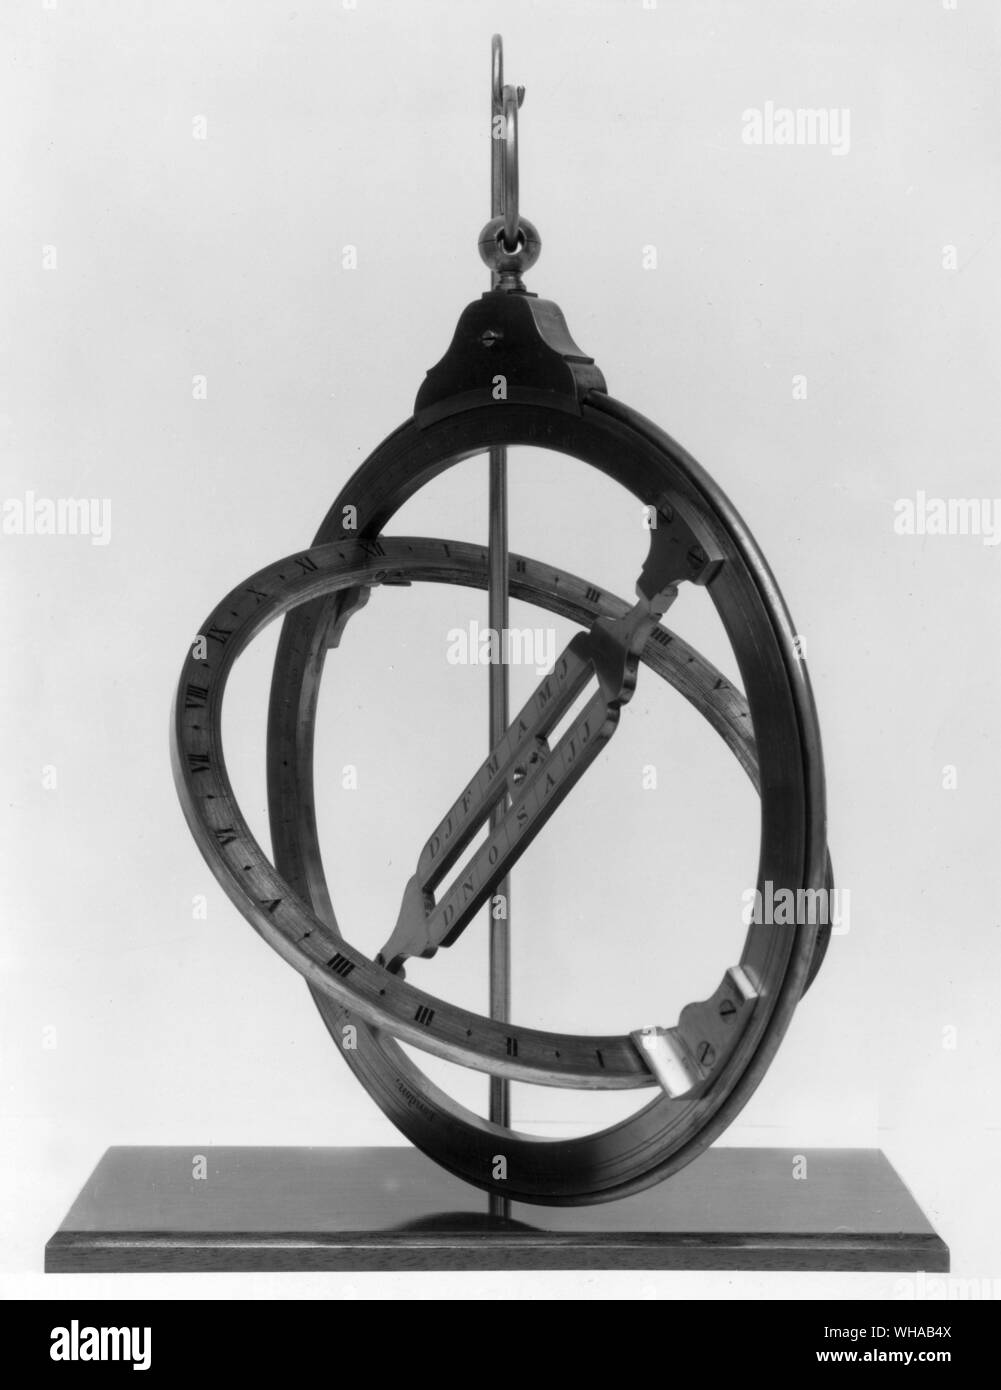 Lange portable universal ring dial c1800 Stock Photo